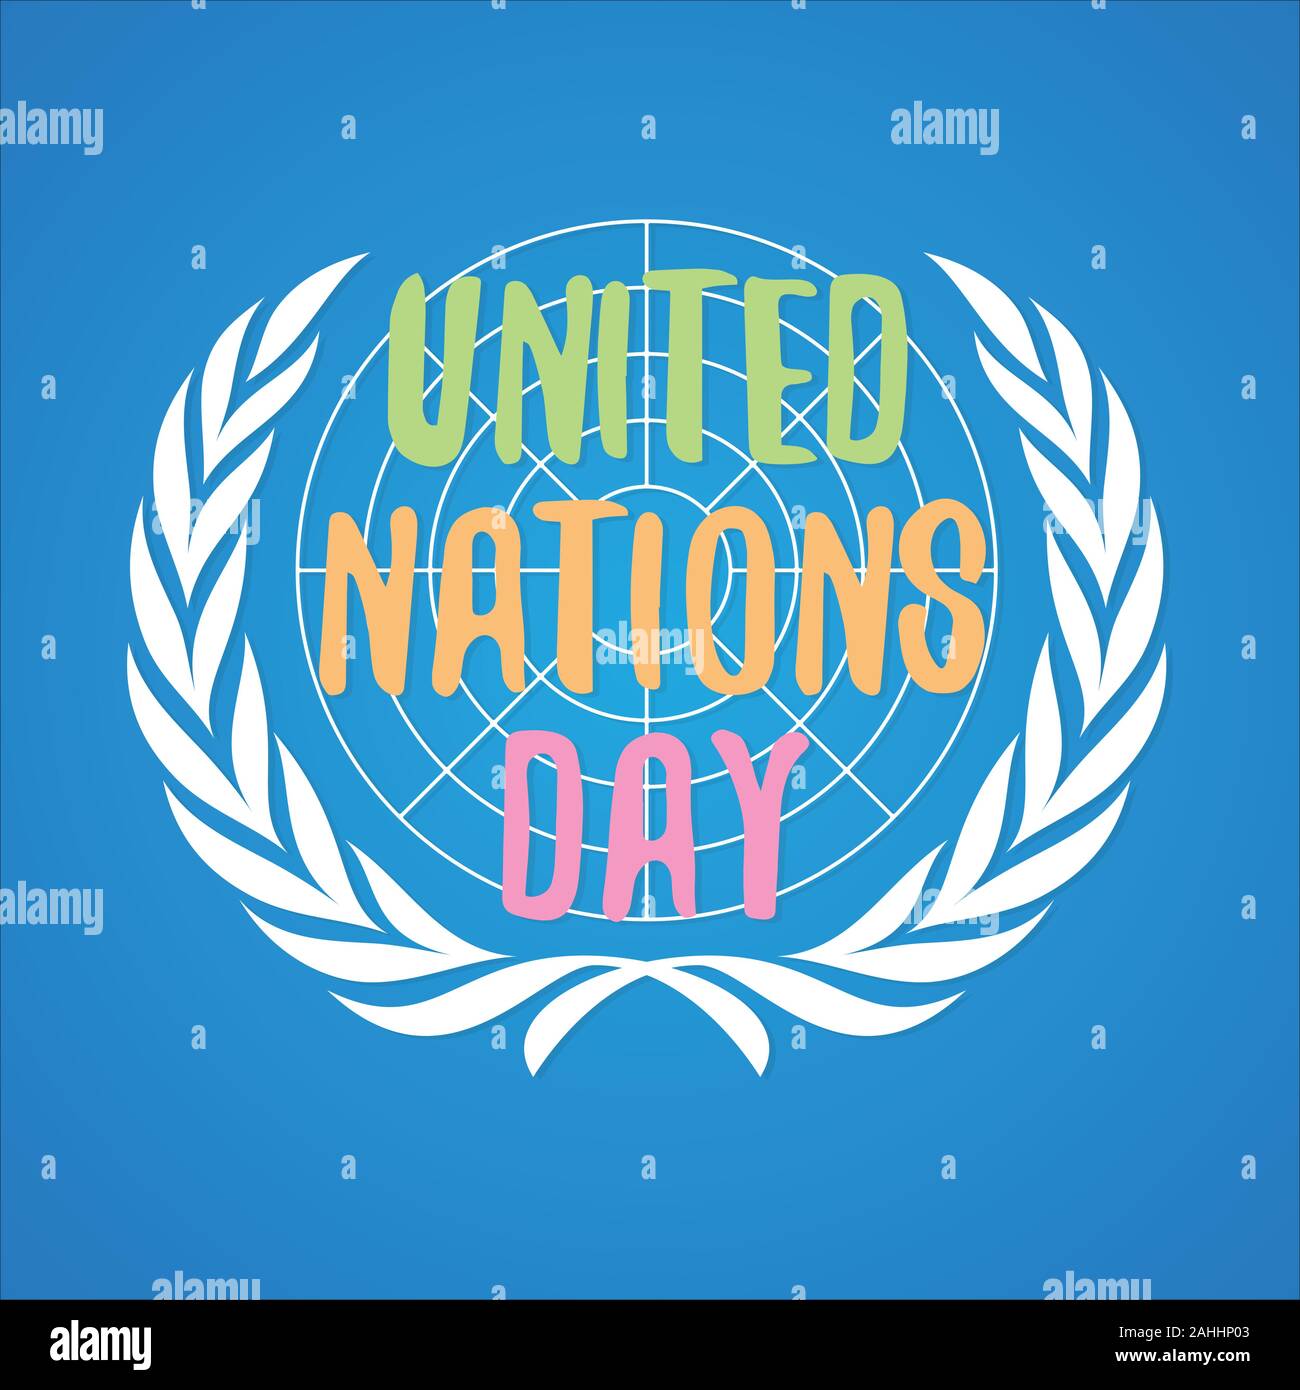 Día de las Naciones Unidas carta llena de colorido vector en estilo plano. Día de las Naciones Unidas el texto del banner. Ilustración vectorial EPS.8 EPS.10 Ilustración del Vector